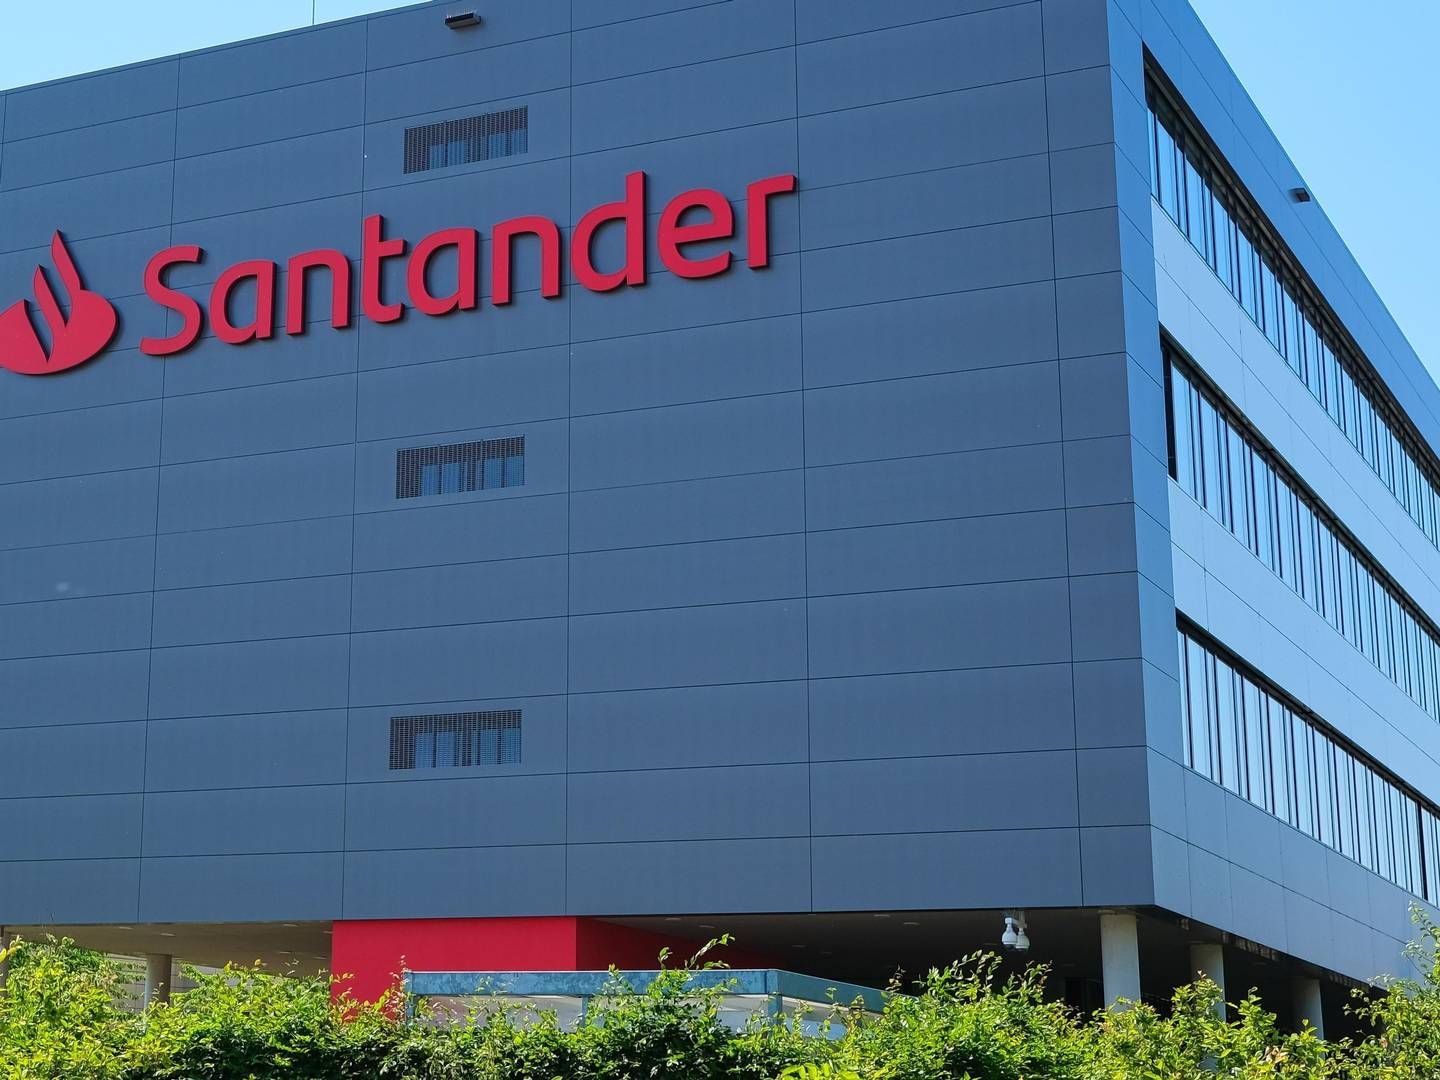 Santander-Vertretung in Mönchengladbach. | Foto: picture alliance / imageBROKER | Fotowerkstatt-ks